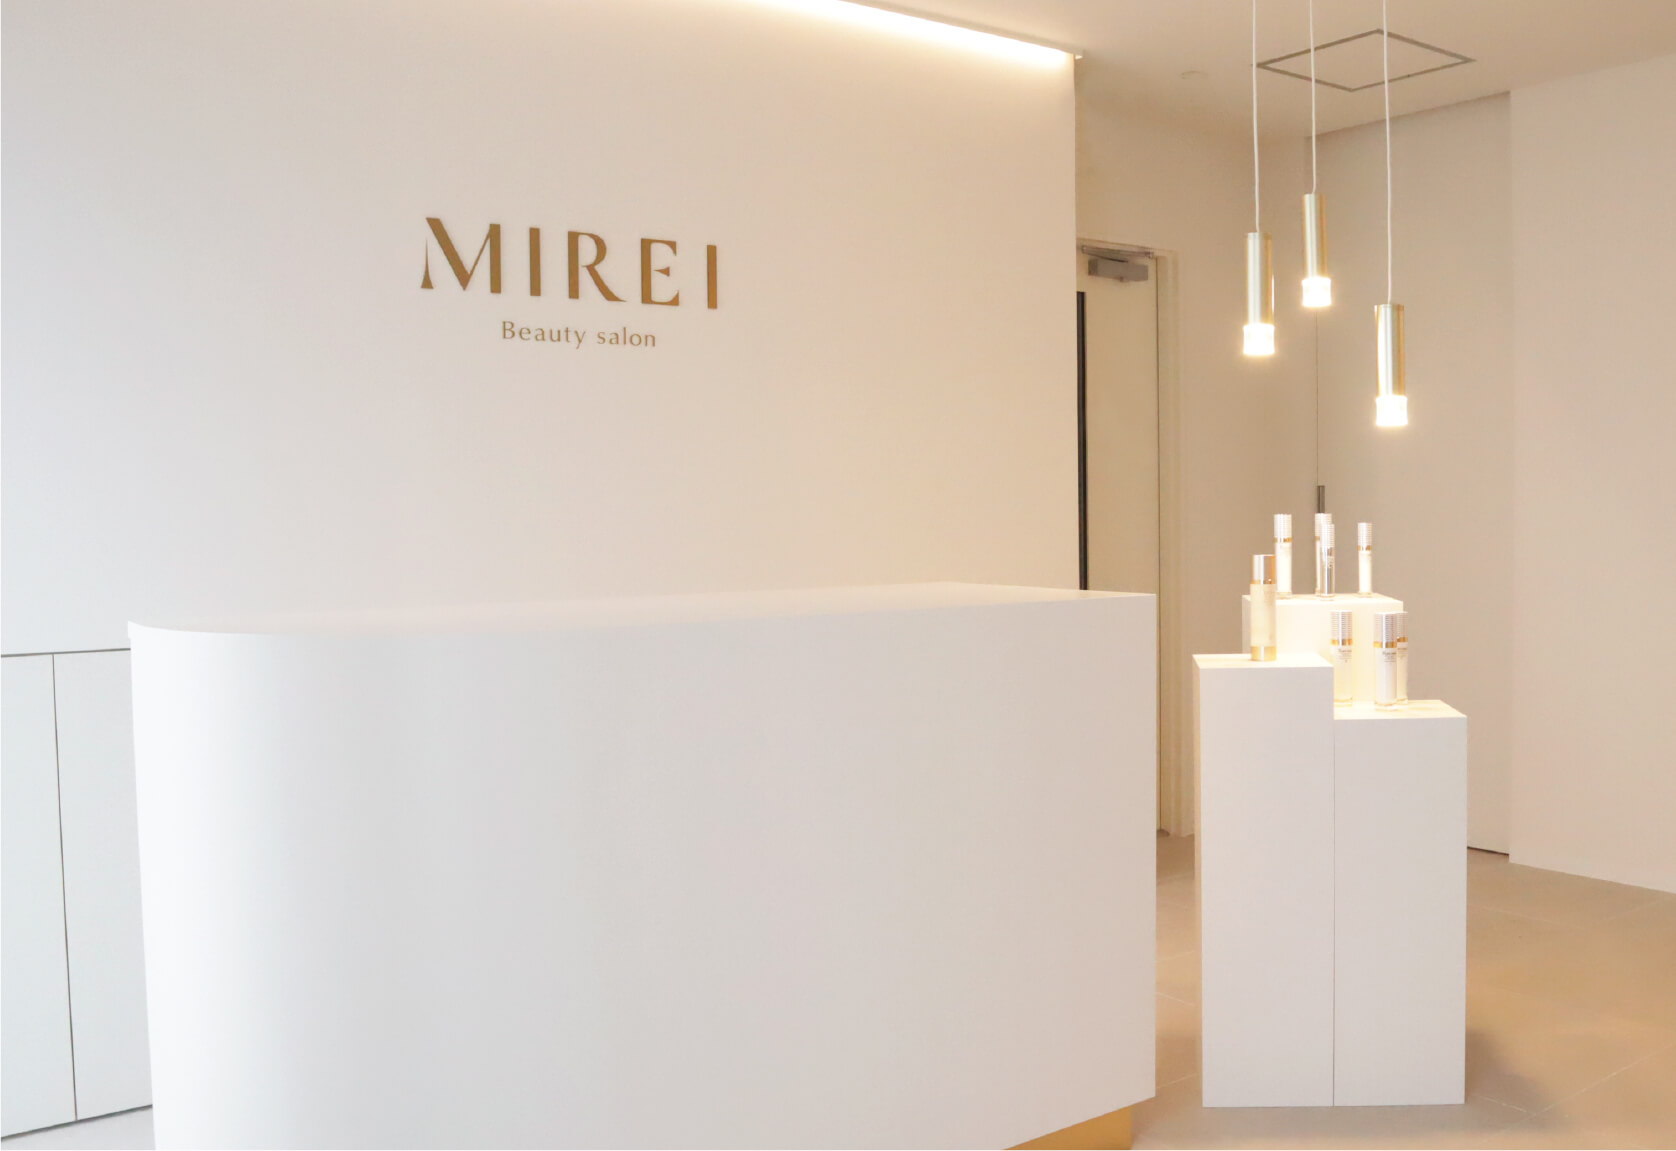 MIREI Beauty salon